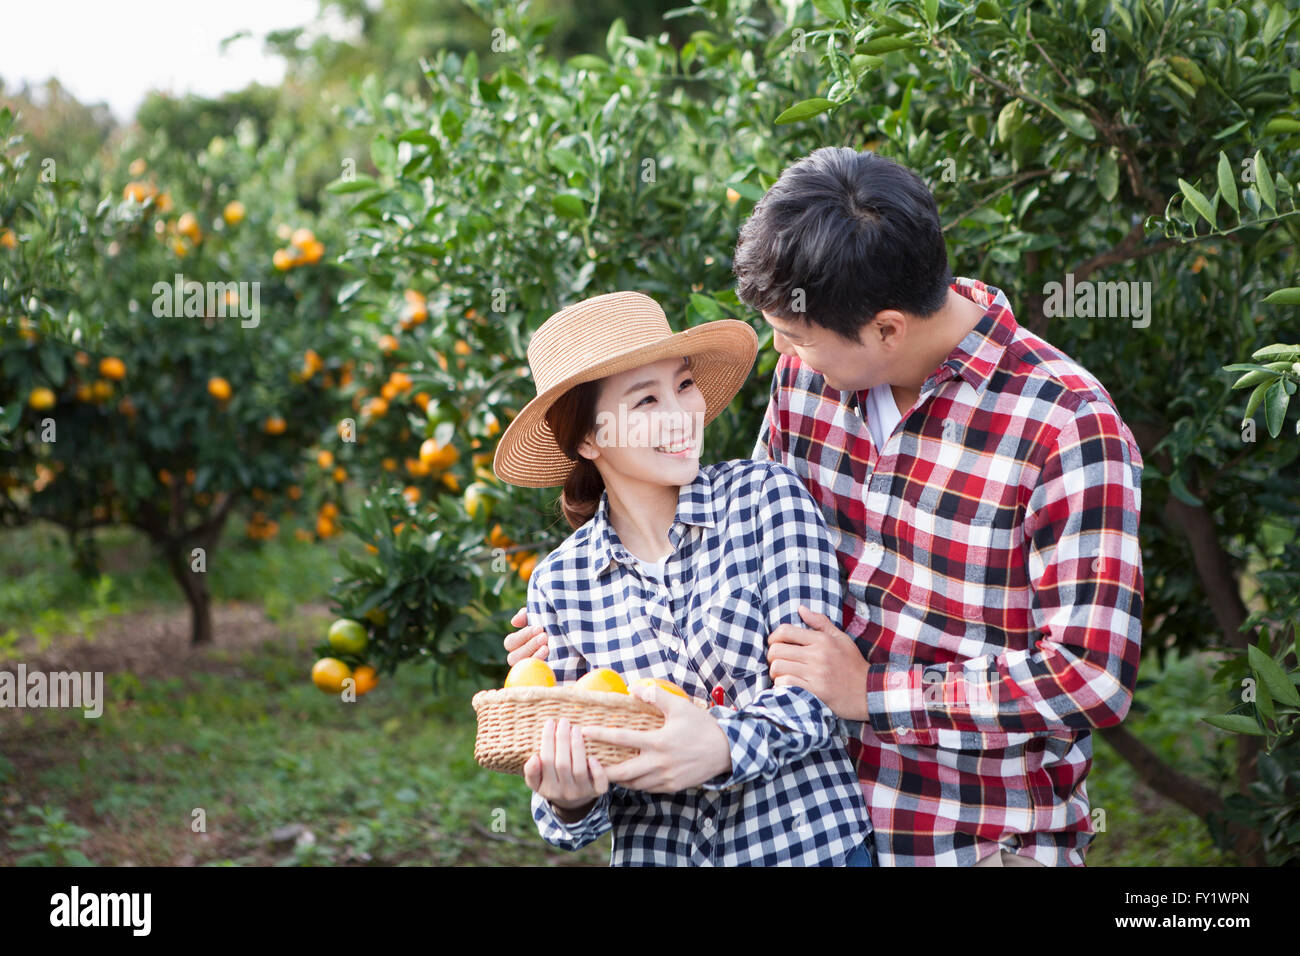 Mann umarmt eine Frau in einen Hut mit einem Korb voller Mandarinen von ihr hinter im Feld Mandarine Stockfoto